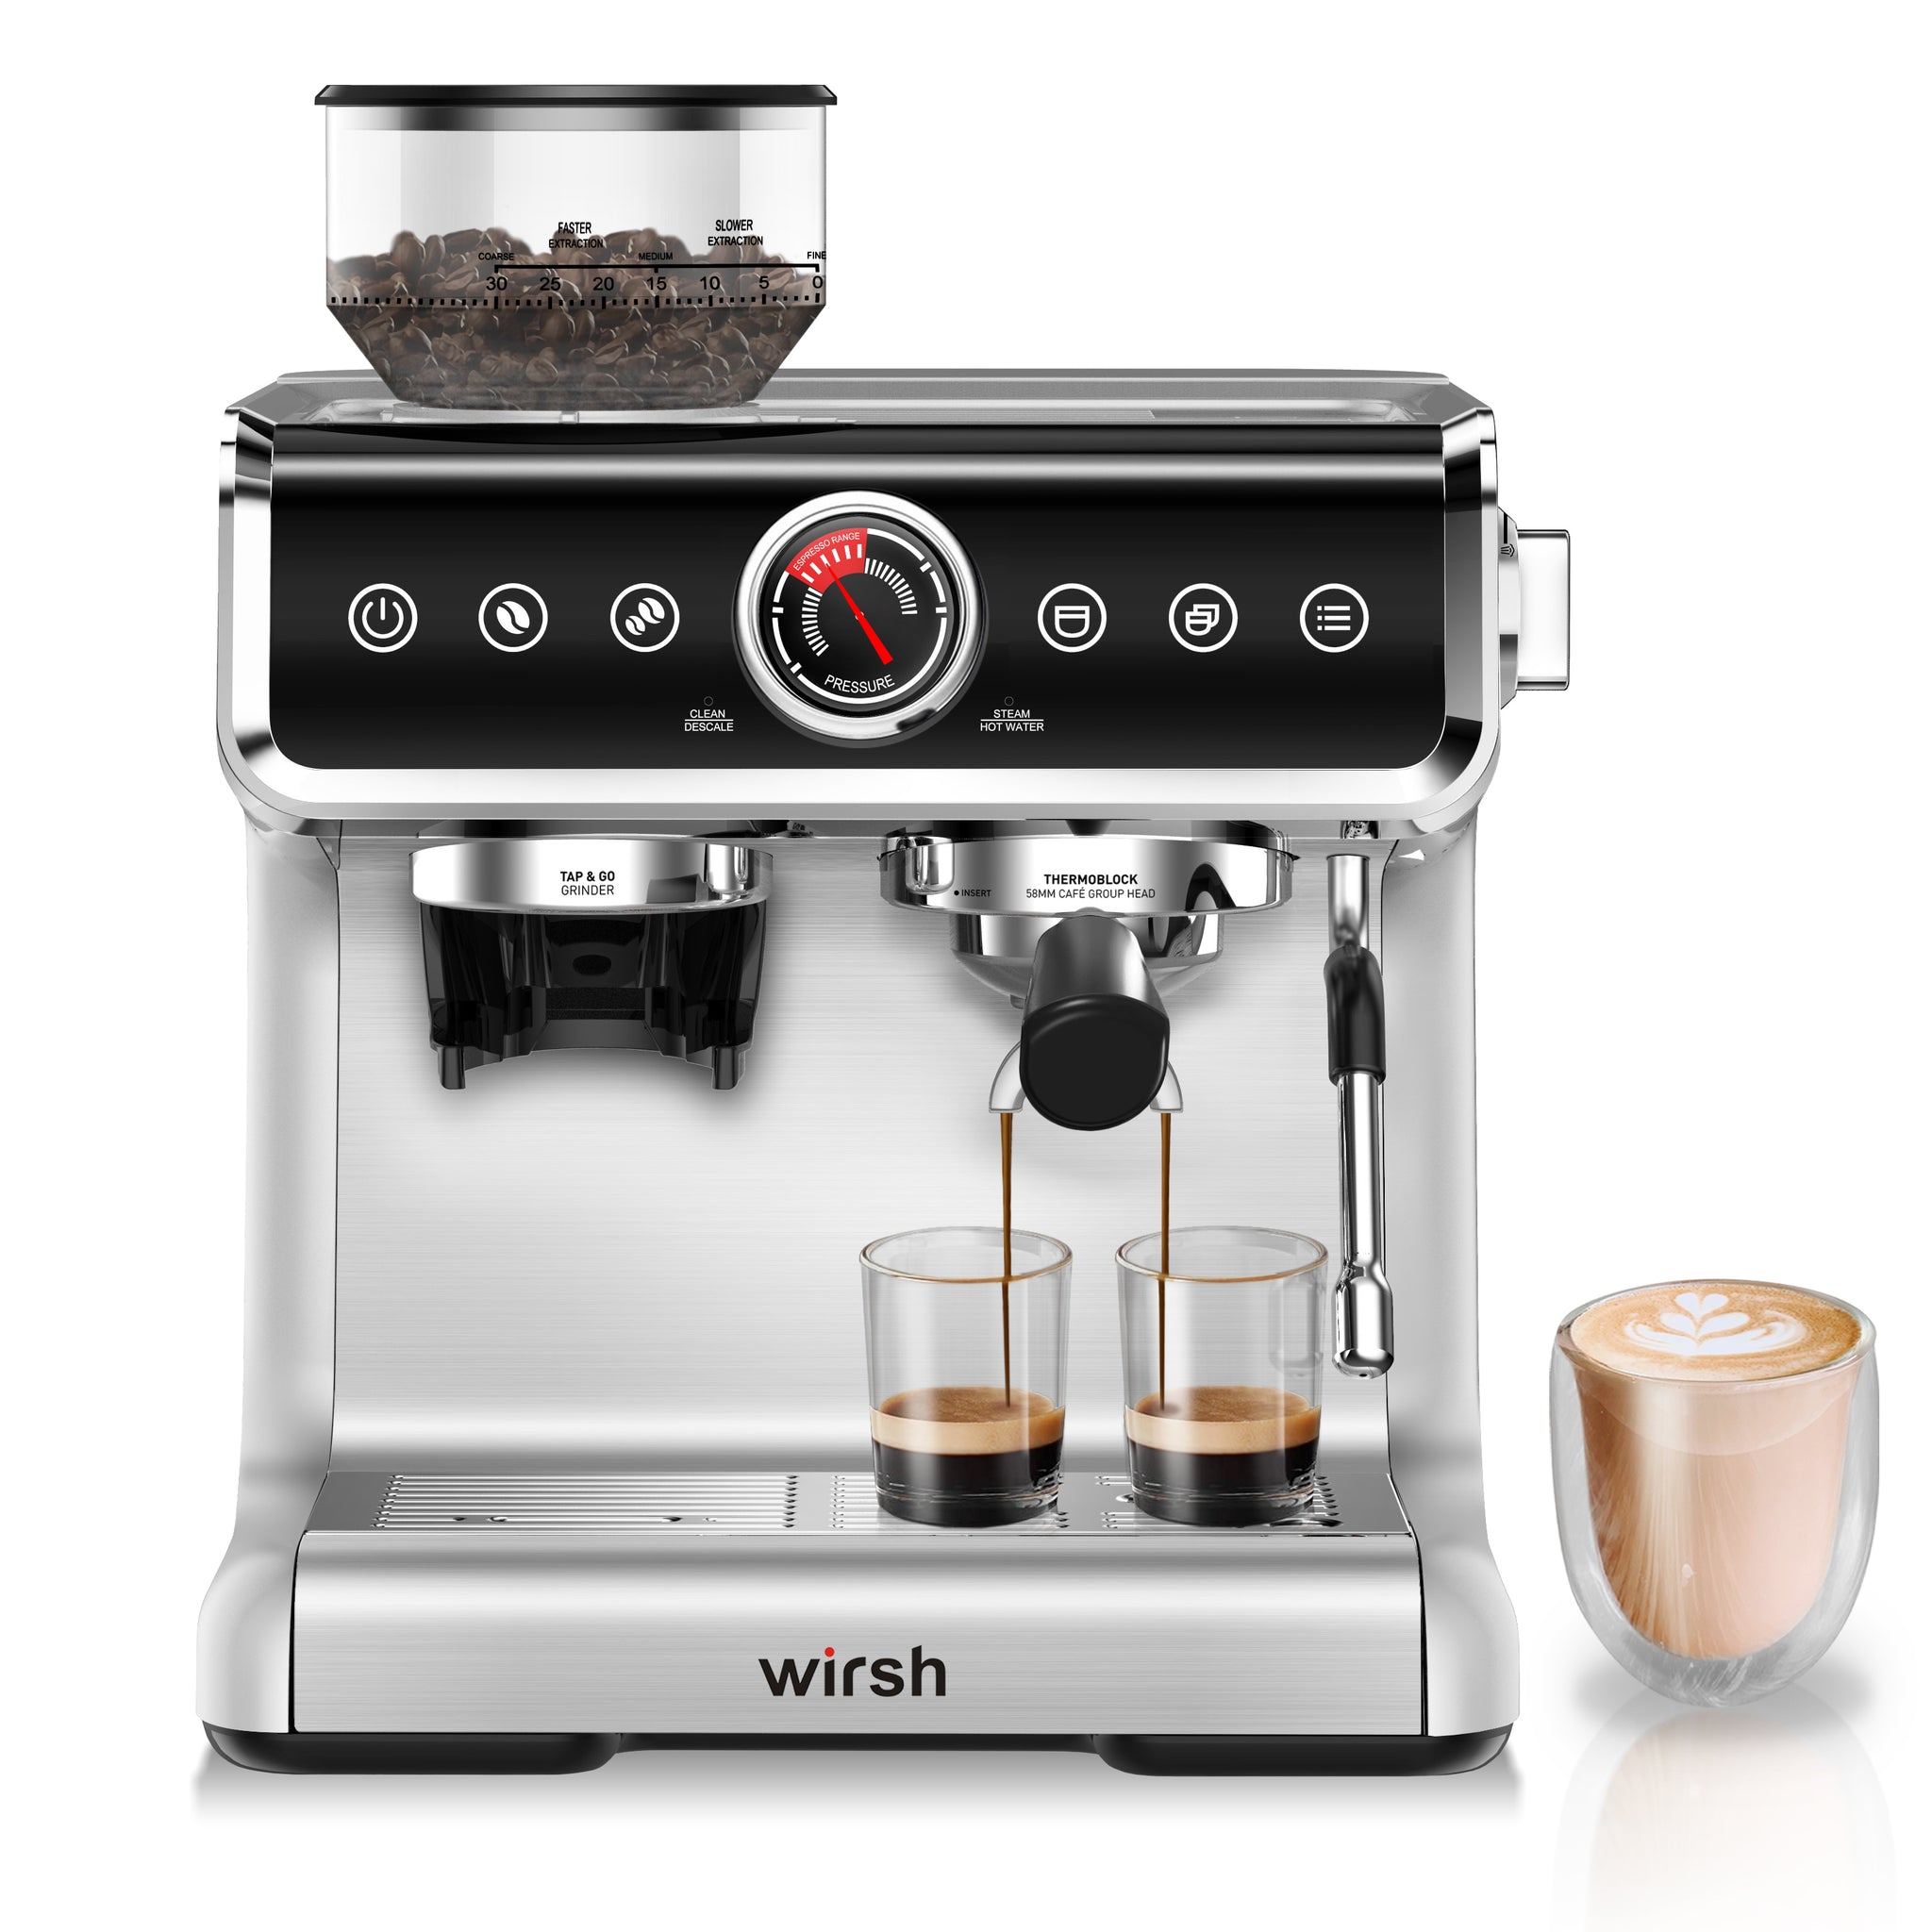 <img src="espresso machine.jpg" alt="wirsh 15 bar bean to espresso machine"/>